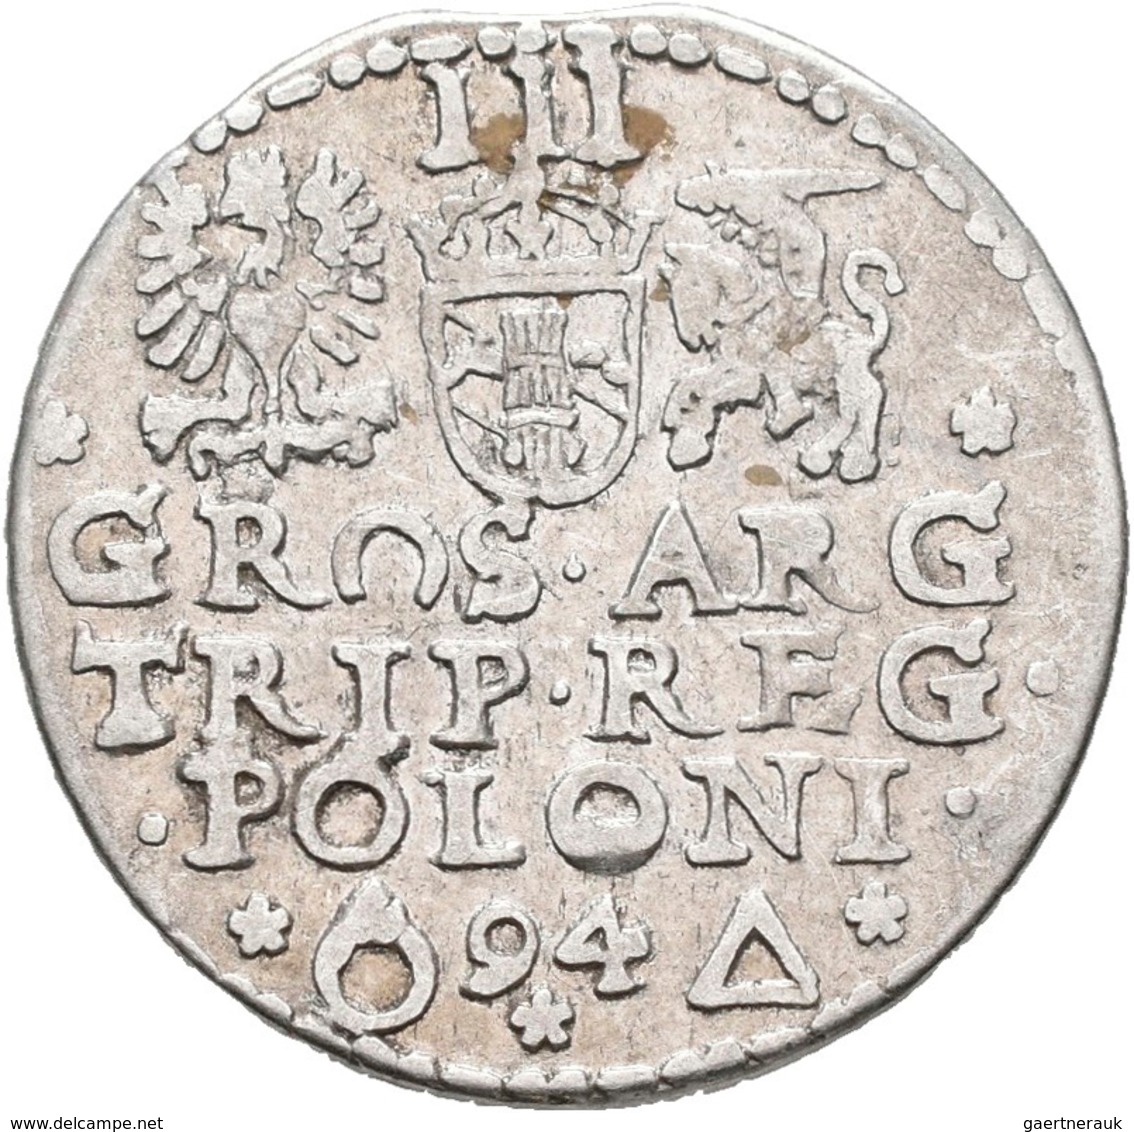 Polen: Sigismund III. (Zygmunt III. Waza) 1587-1632: Lot 6 Münzen: 3 Gröscher / Grosze (Trojak) um 1